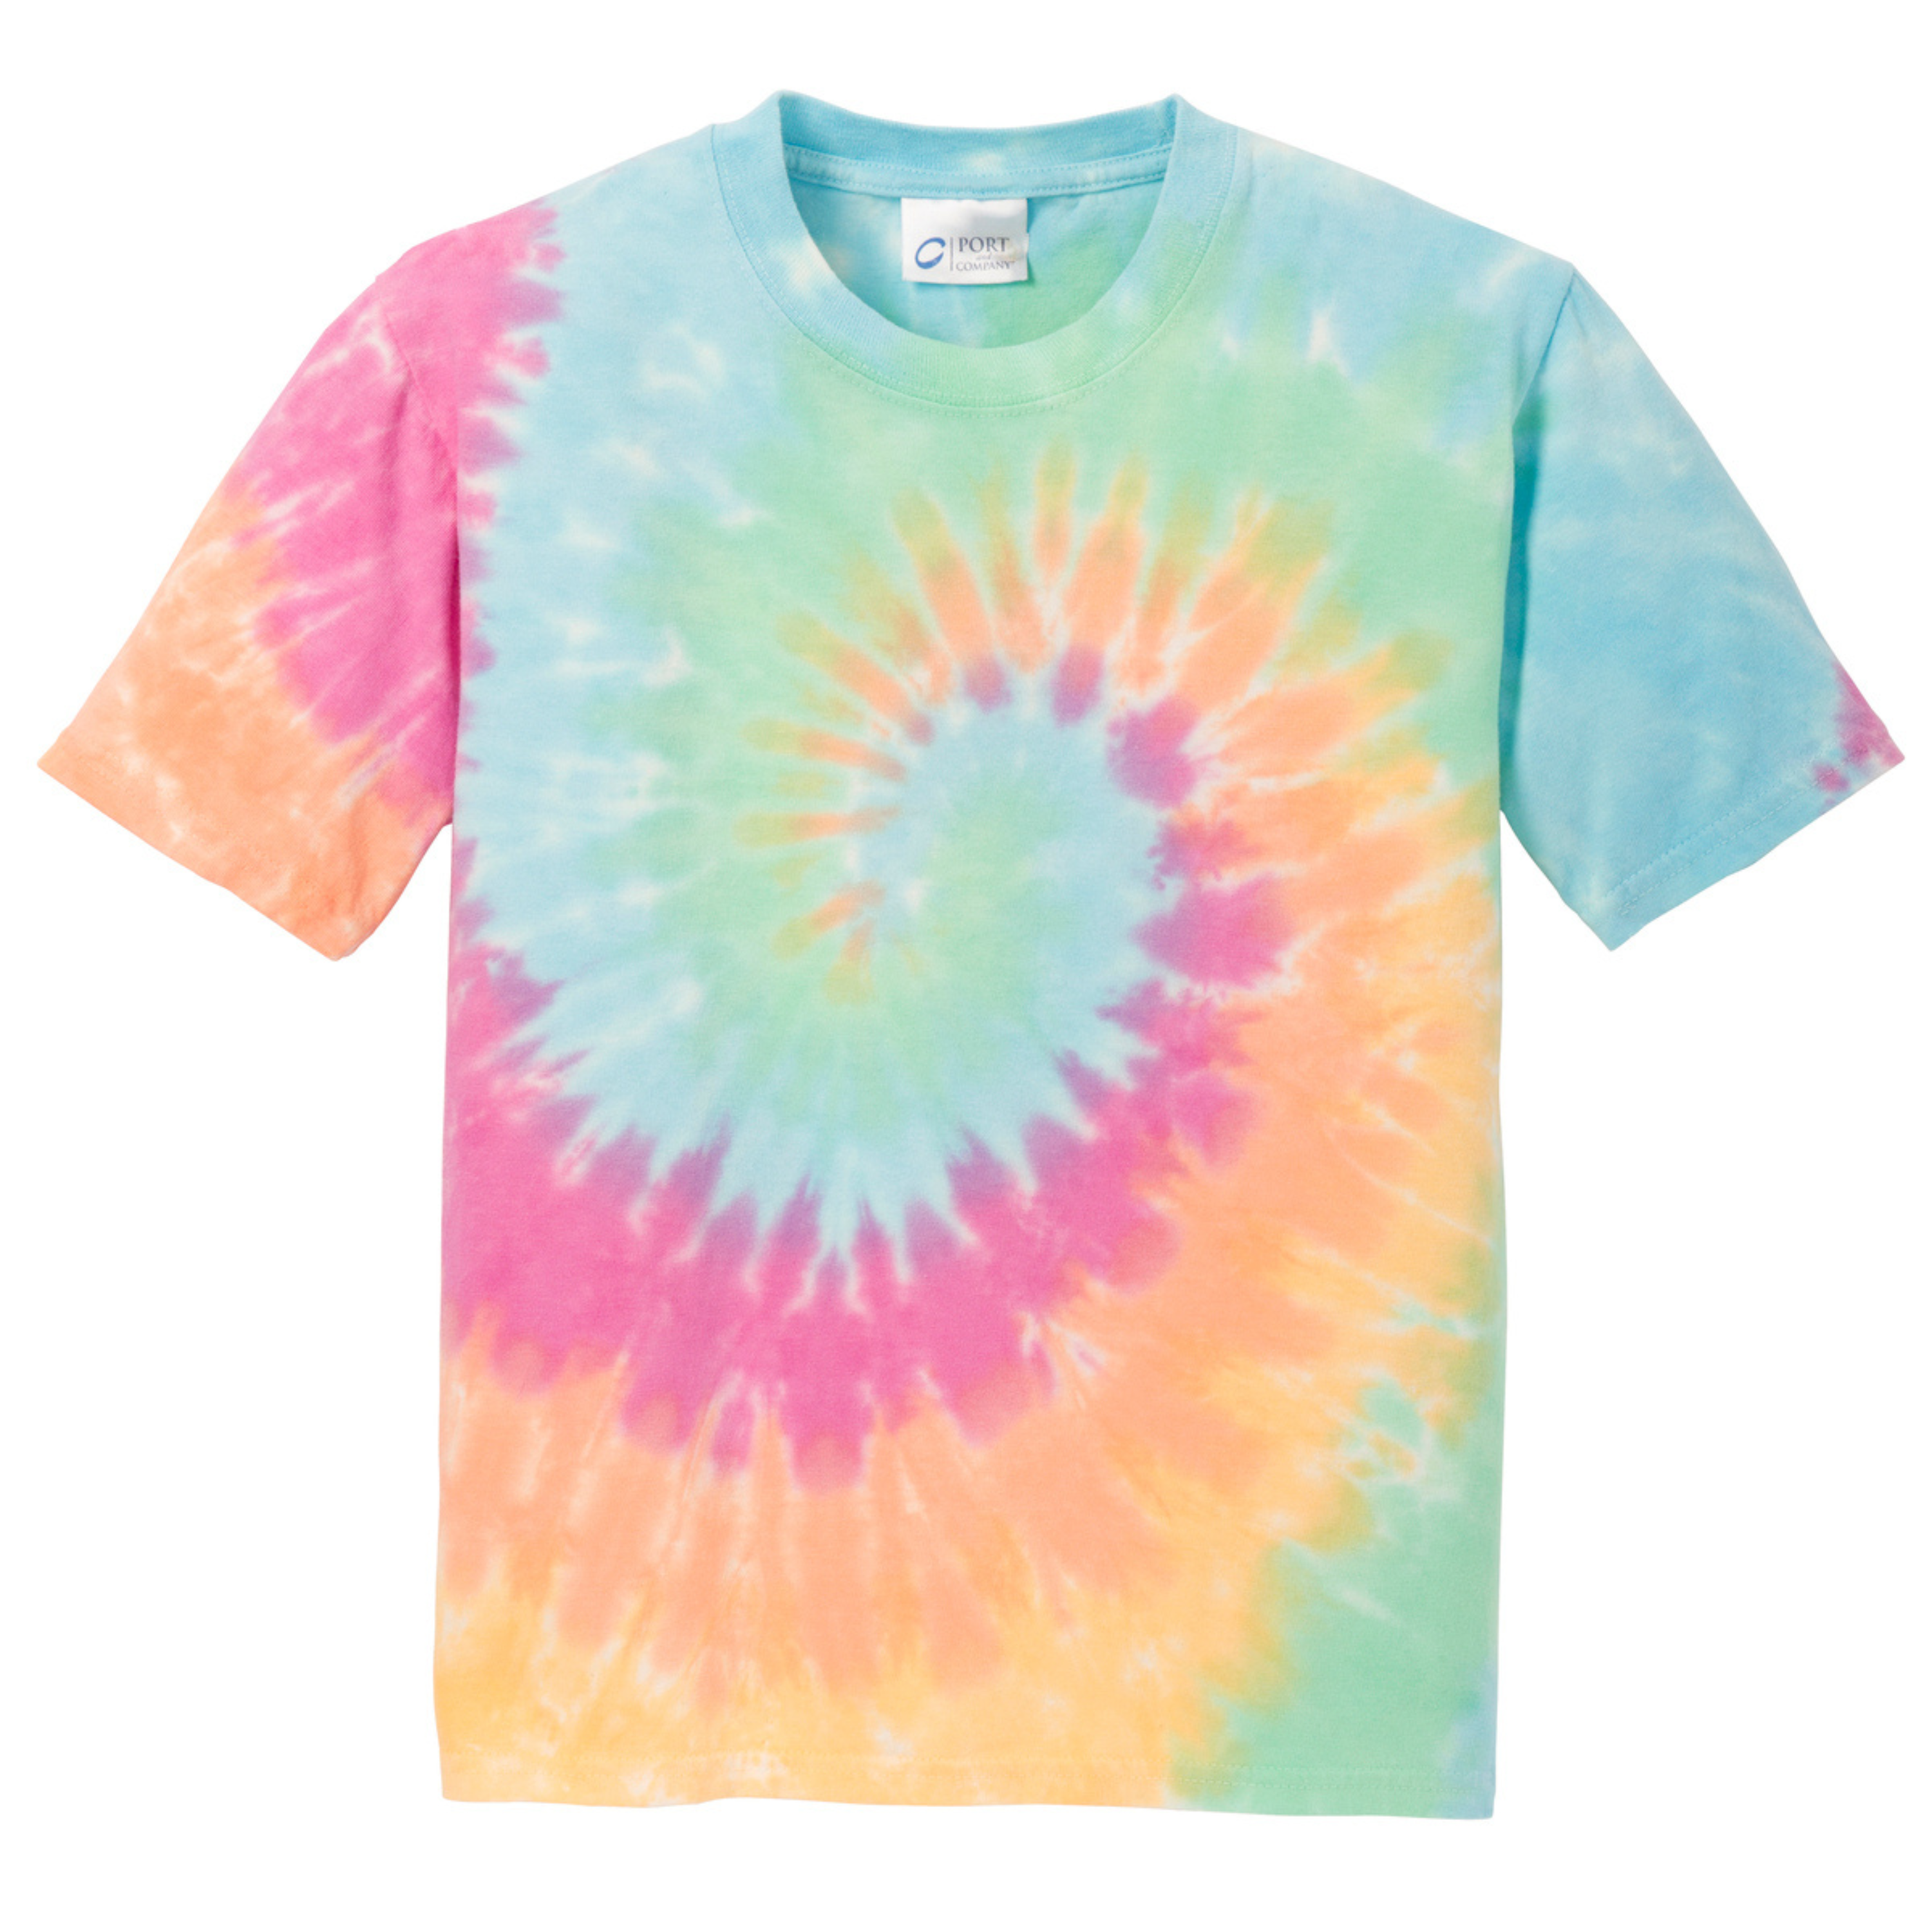 Unisex Tie-Dye Kids T-shirt